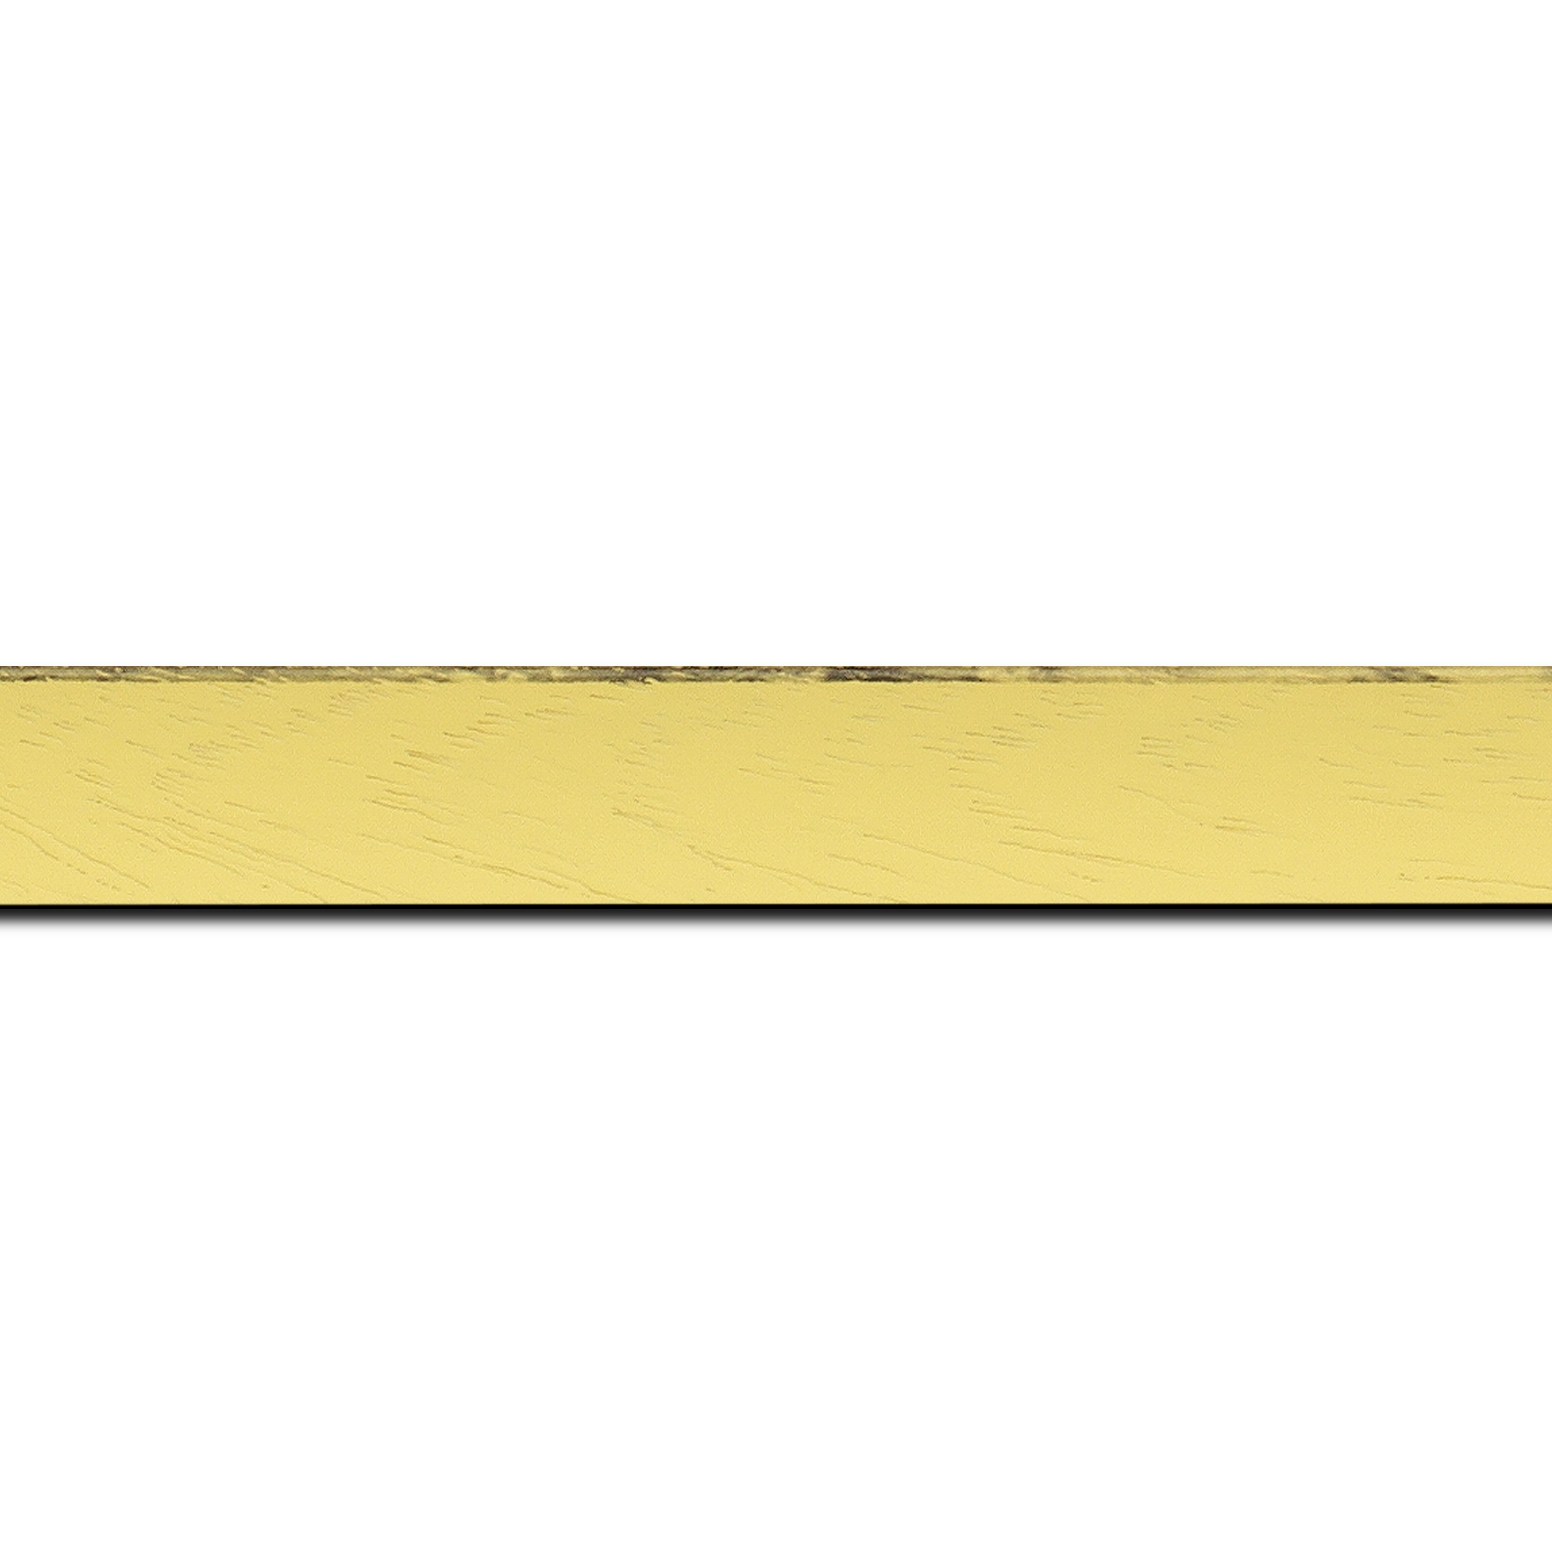 Pack par 12m, bois profil concave largeur 2.4cm couleur jaune tonique satiné arêtes essuyés noircies de chaque coté  (longueur baguette pouvant varier entre 2.40m et 3m selon arrivage des bois)